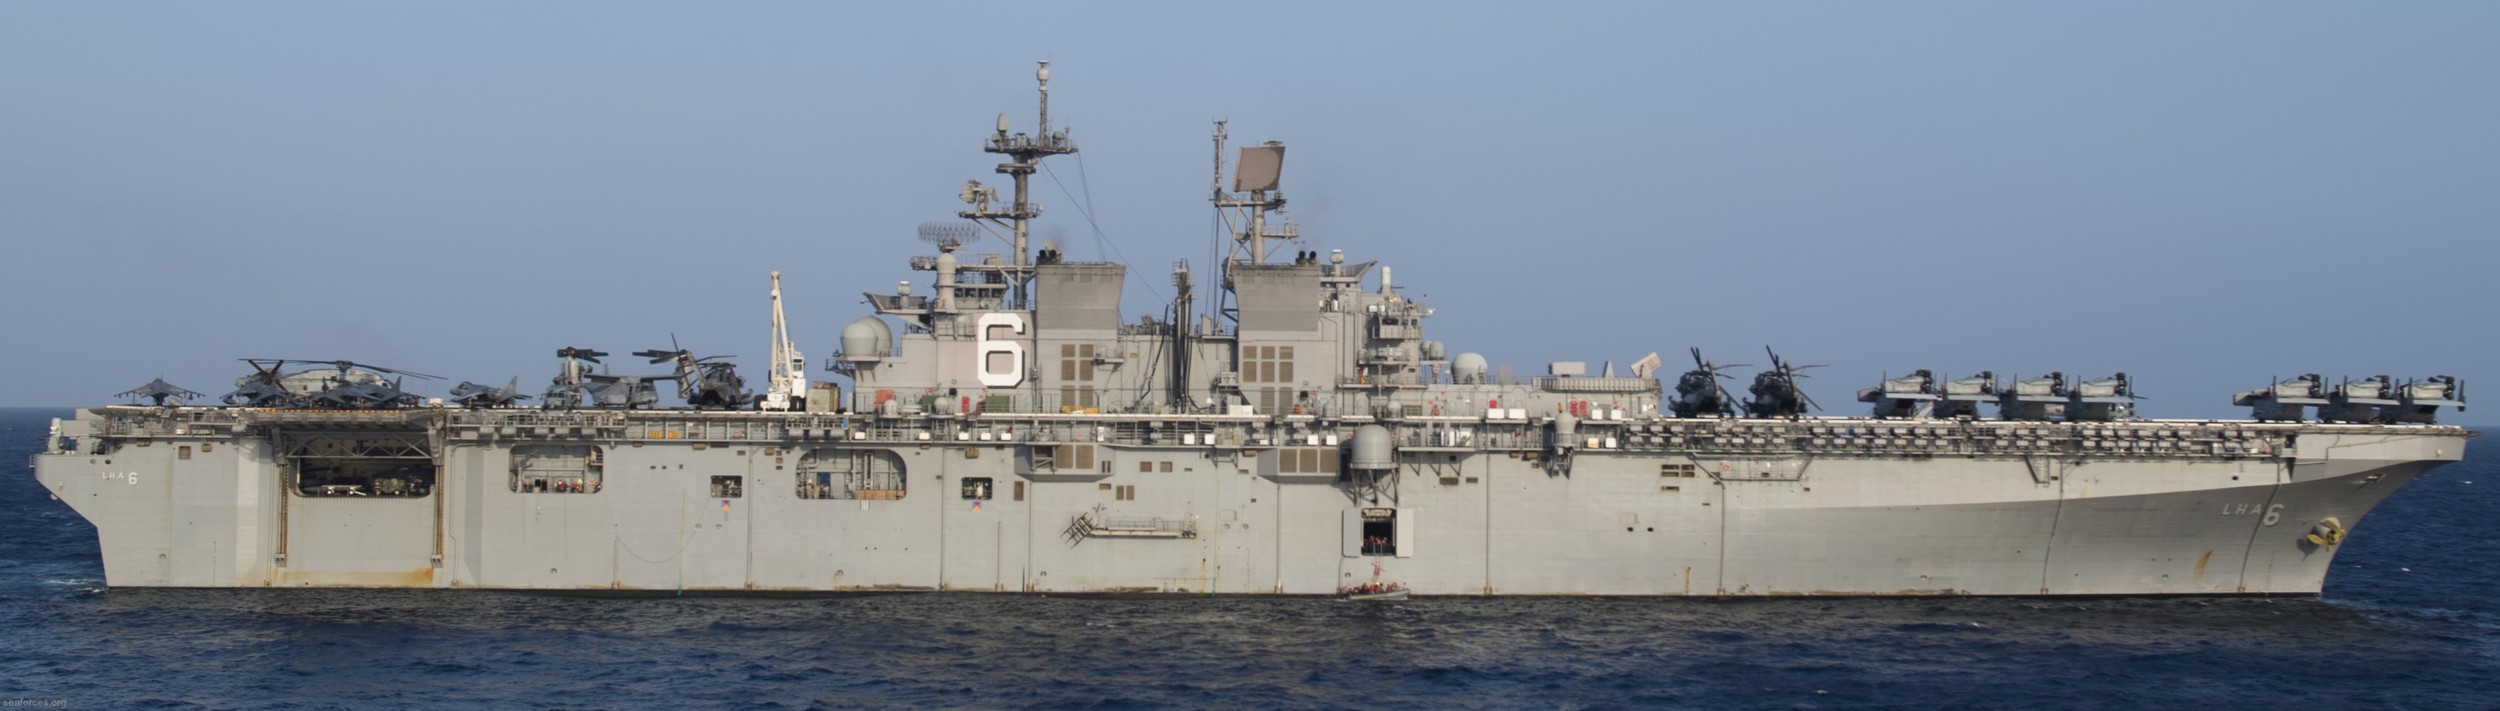 lha-6 uss america amphibious assault ship landing us navy vmm-161(rein) gulf aden 38